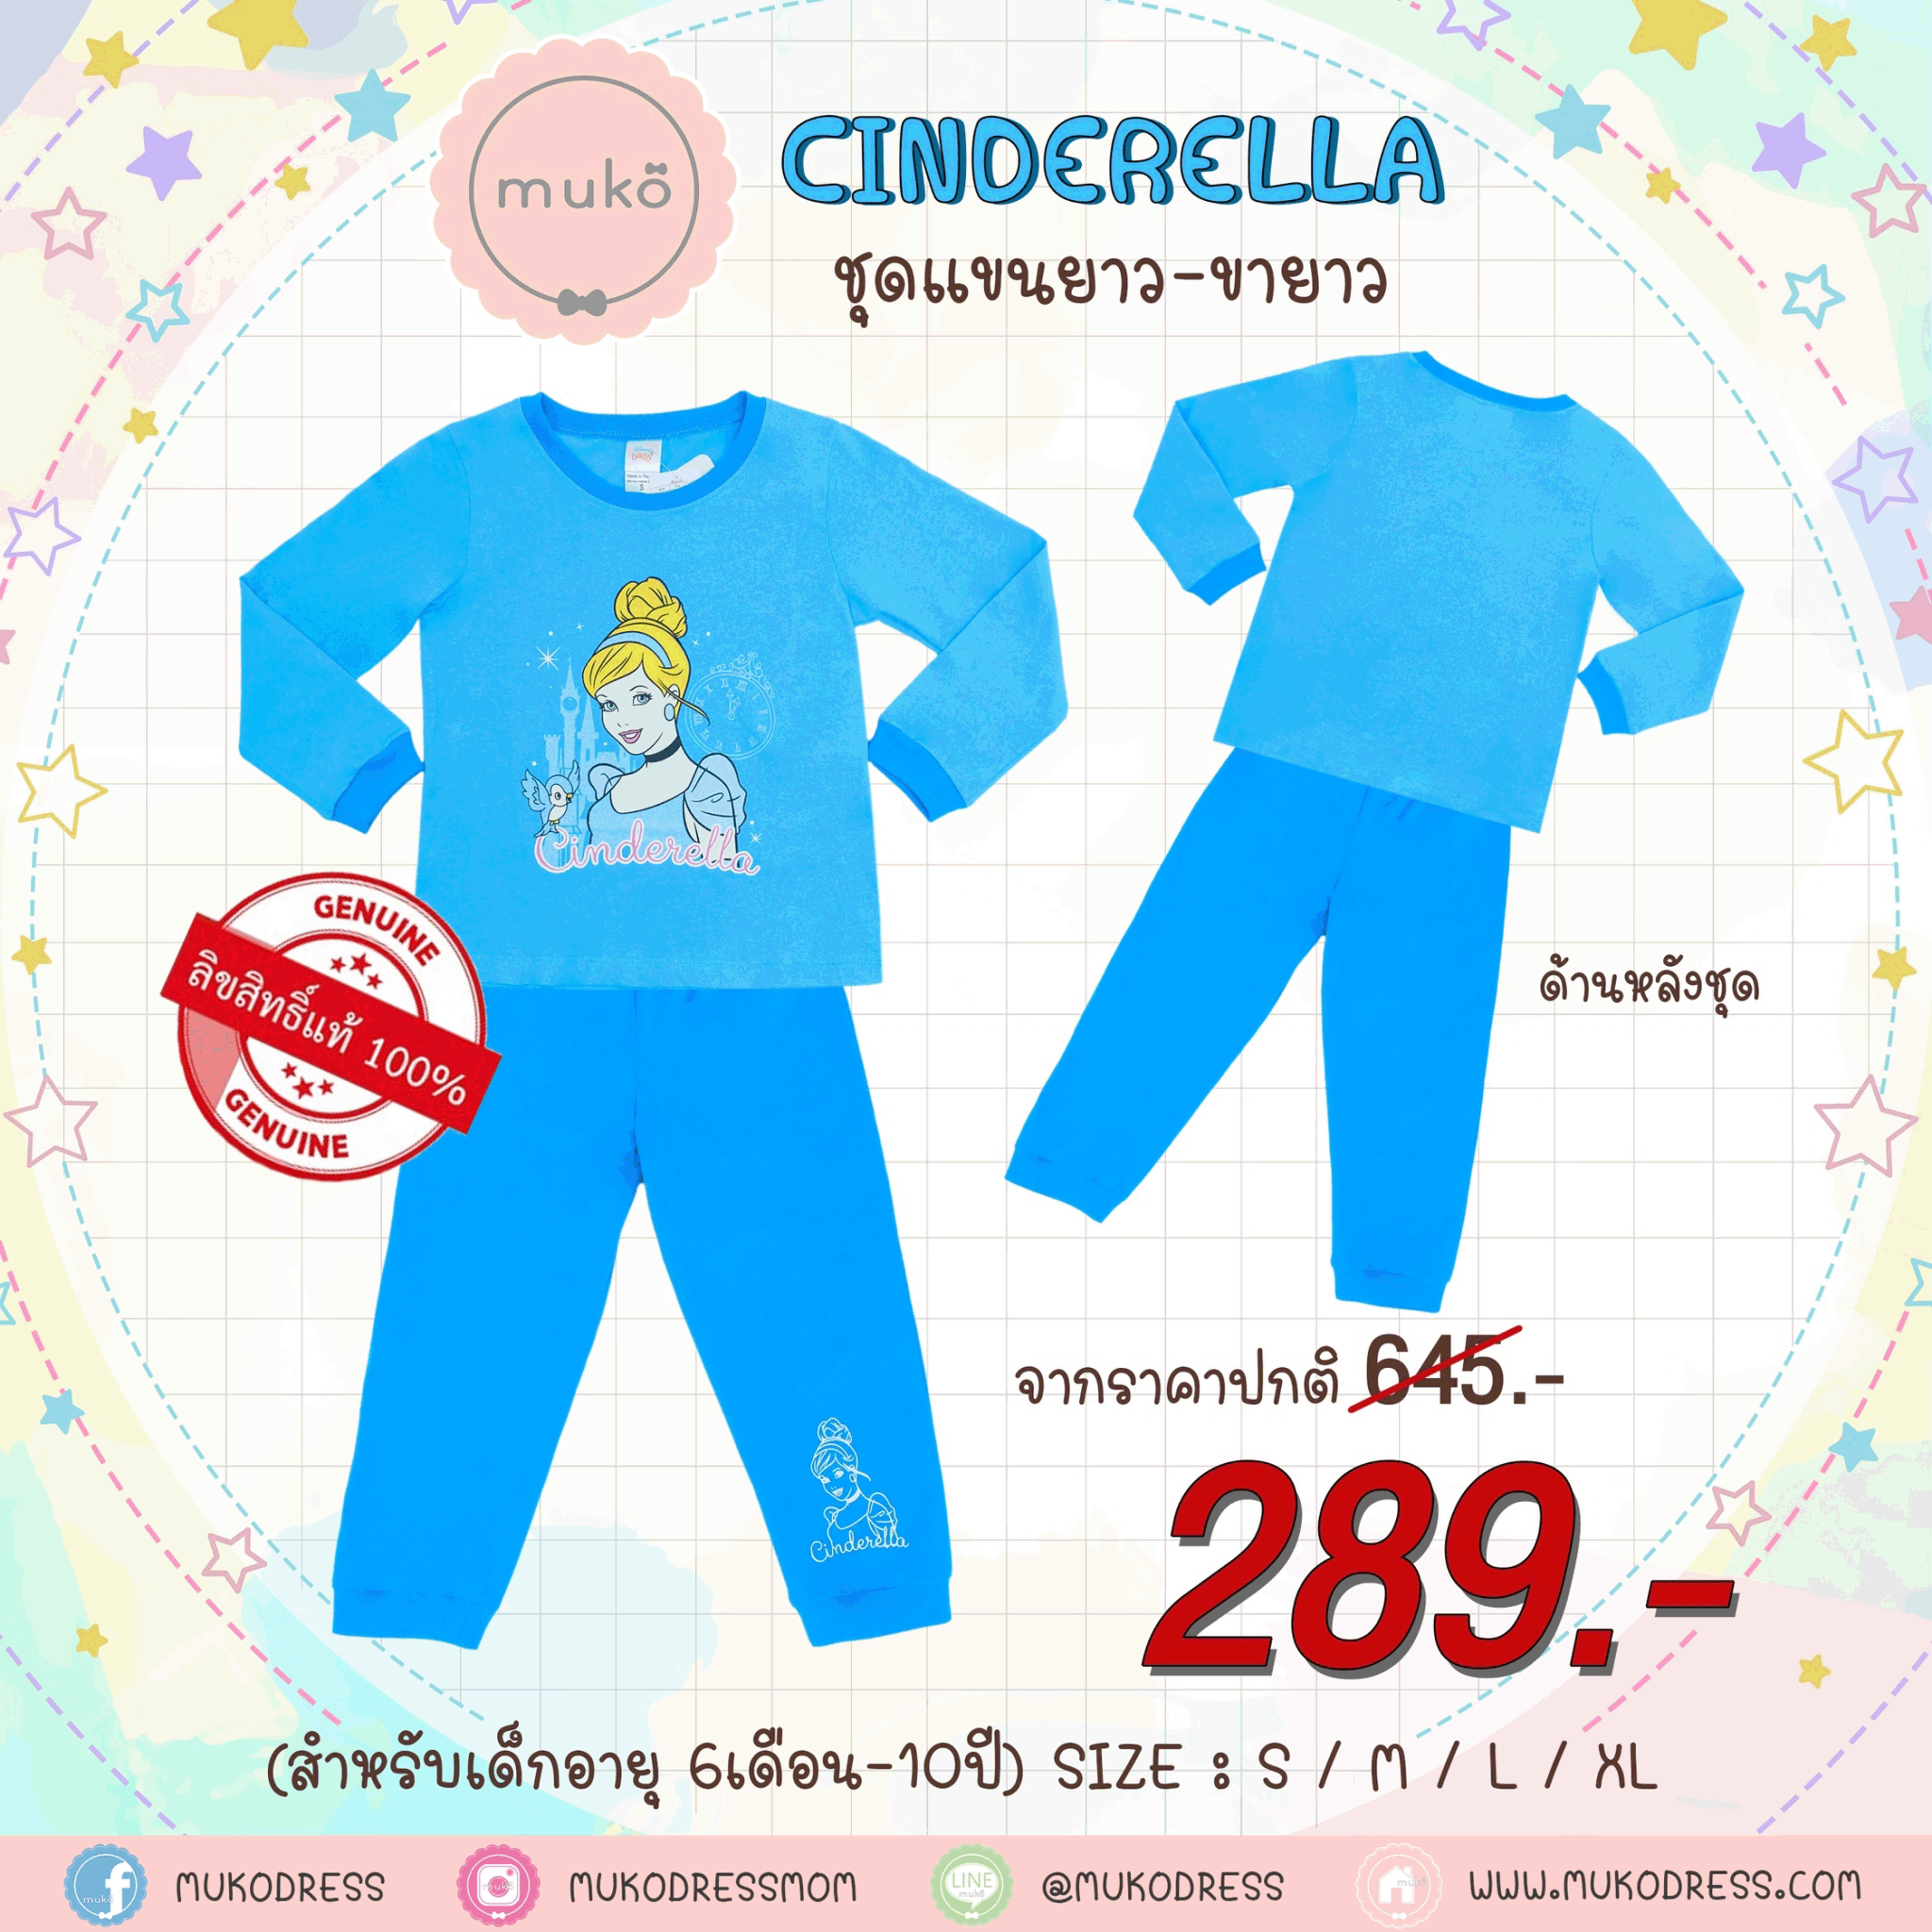 ชุดเด็ก 4-5 ขวบ แขนยาว-ขายาว (Size S) DPC127-05-XL-Blue S ลาย เจ้าหญิงซินเดอเรลล่า Cinderella สีฟ้า (เจ้าหญิงและนกน้อย)